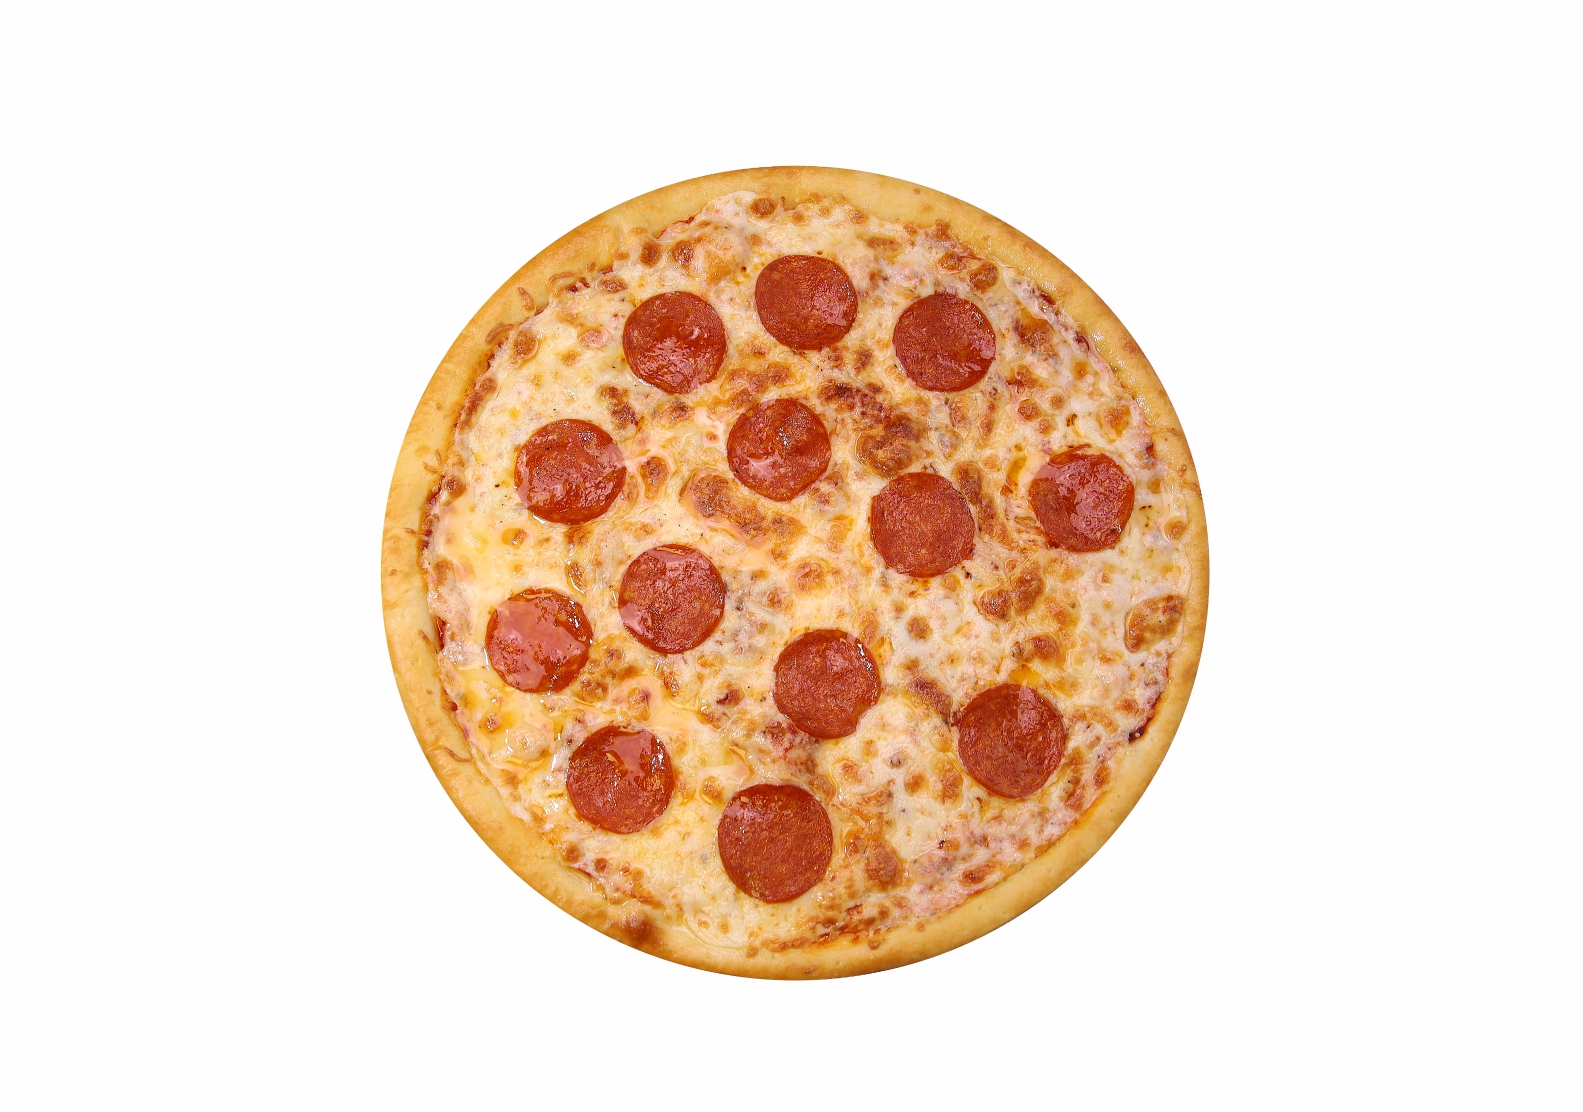 я хочу пиццу песто с пепперони и сосисками так же хочу другую с оливками фото 33